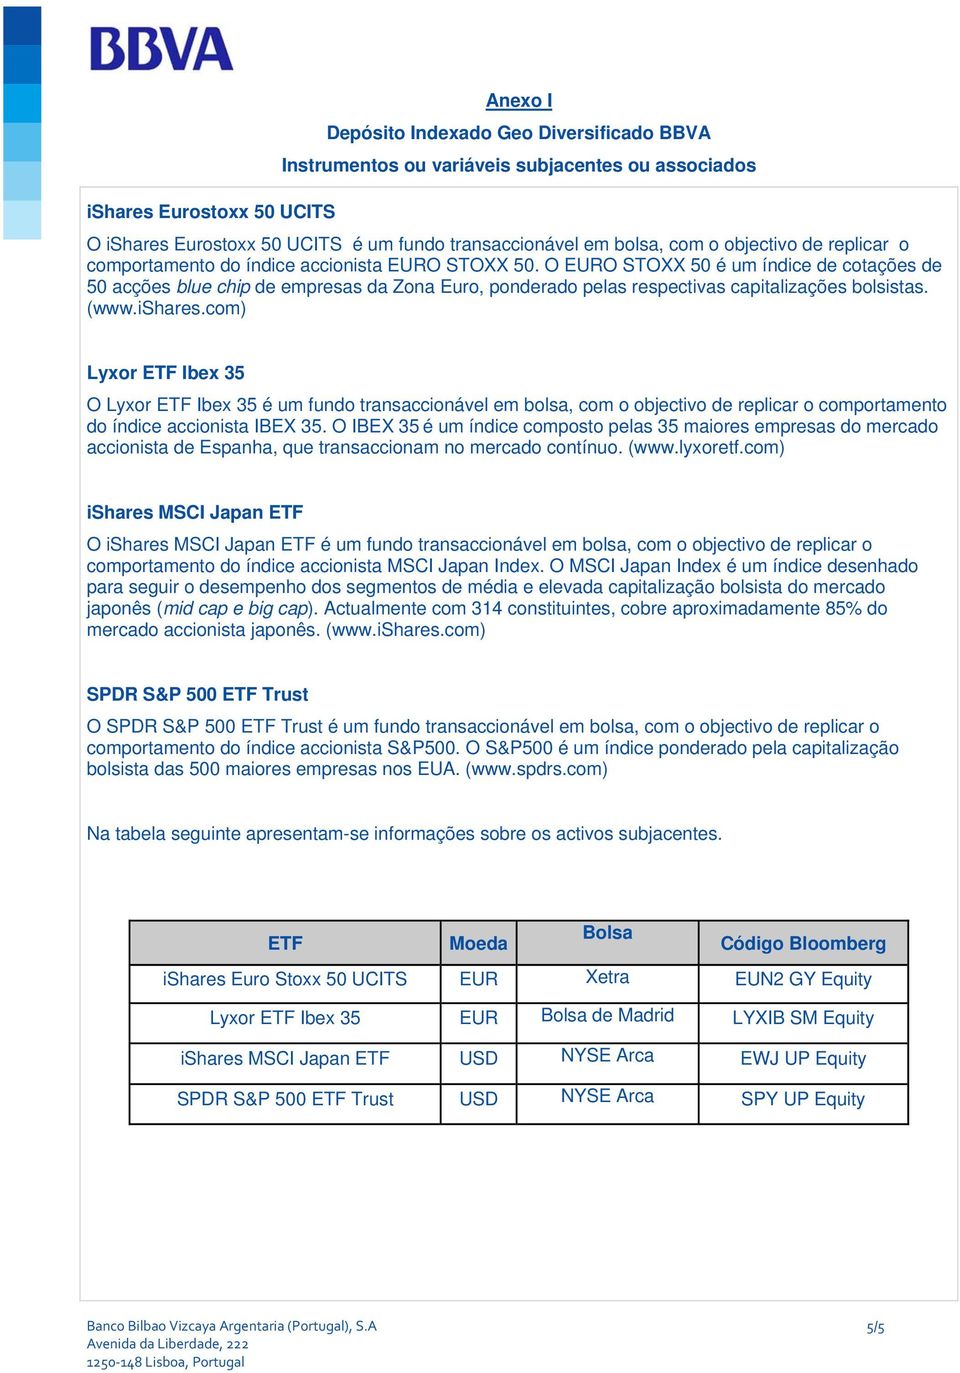 O EURO STOXX 50 é um índice de cotações de 50 acções blue chip de empresas da Zona Euro, ponderado pelas respectivas capitalizações bolsistas. (www.ishares.